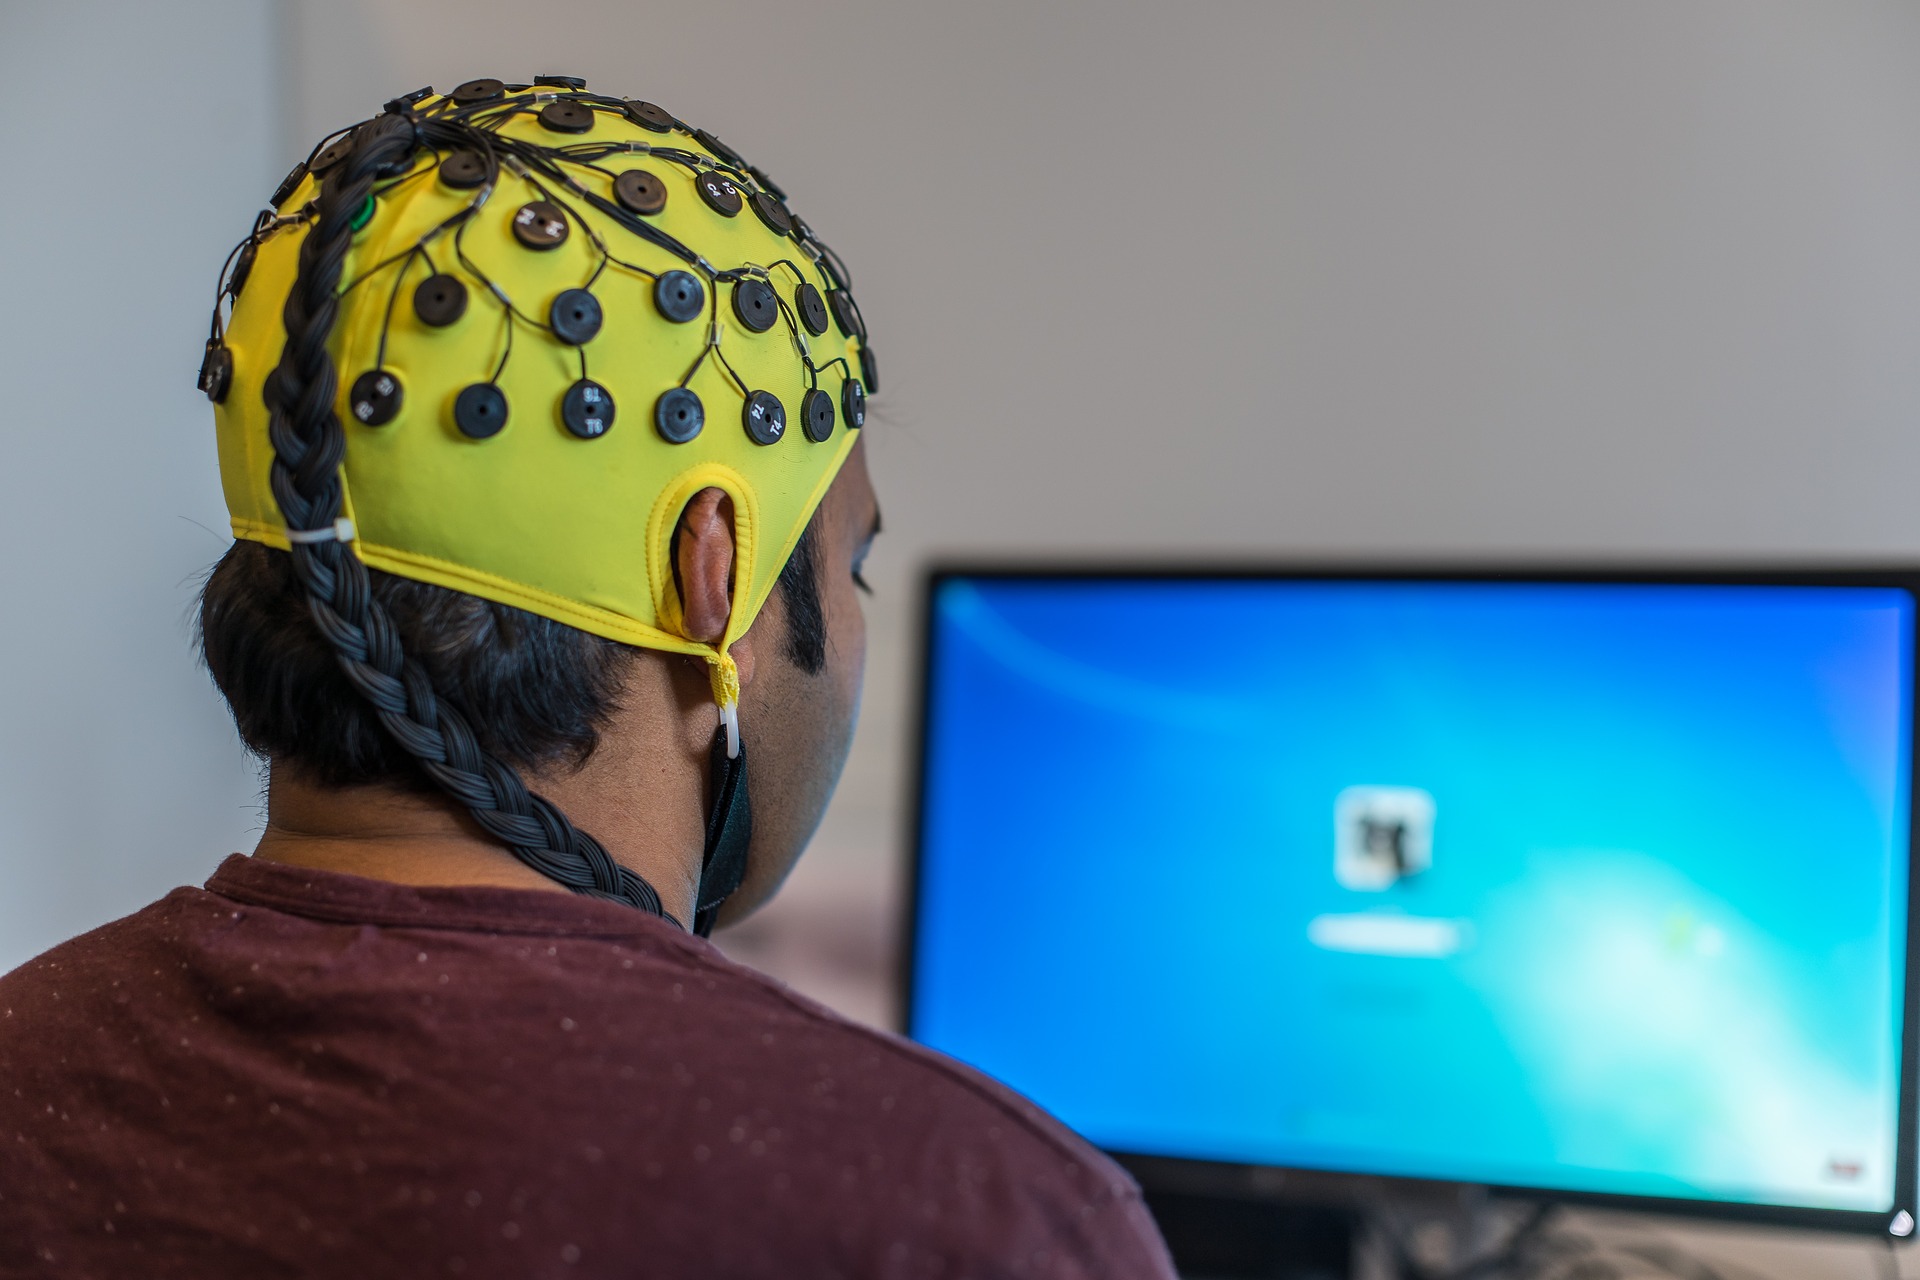 Forskare utvecklar AI som kan förvandla hjärnaktivitet till text